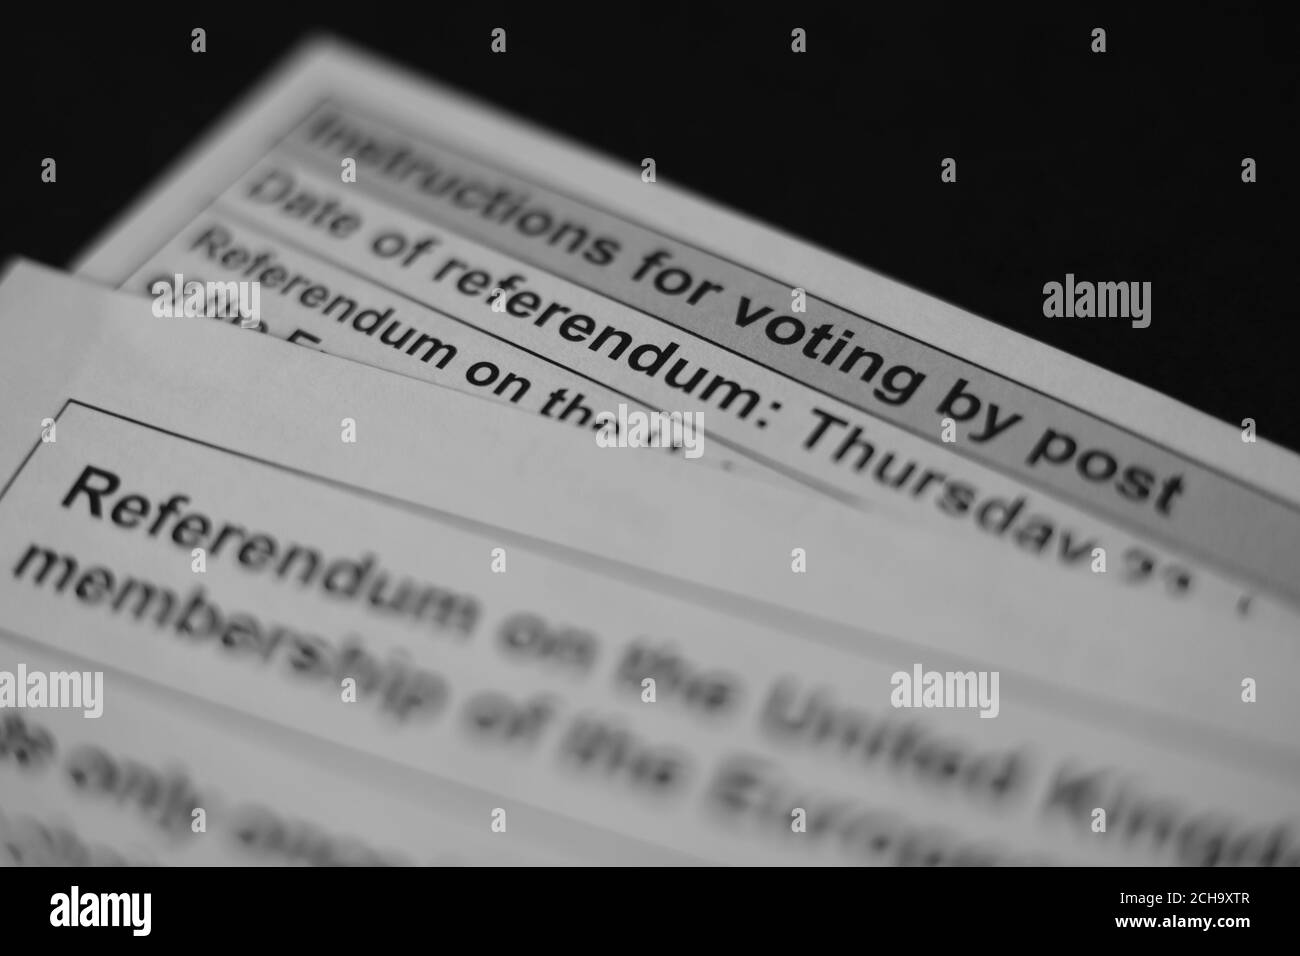 Detail eines EU-Referendums Poststimmzettel und Stimmzettel, London. DRÜCKEN Sie VERBANDSFOTO. Bilddatum: Montag, 13. Juni 2016. Bildnachweis sollte lauten: Yui Mok/PA Wire Stockfoto